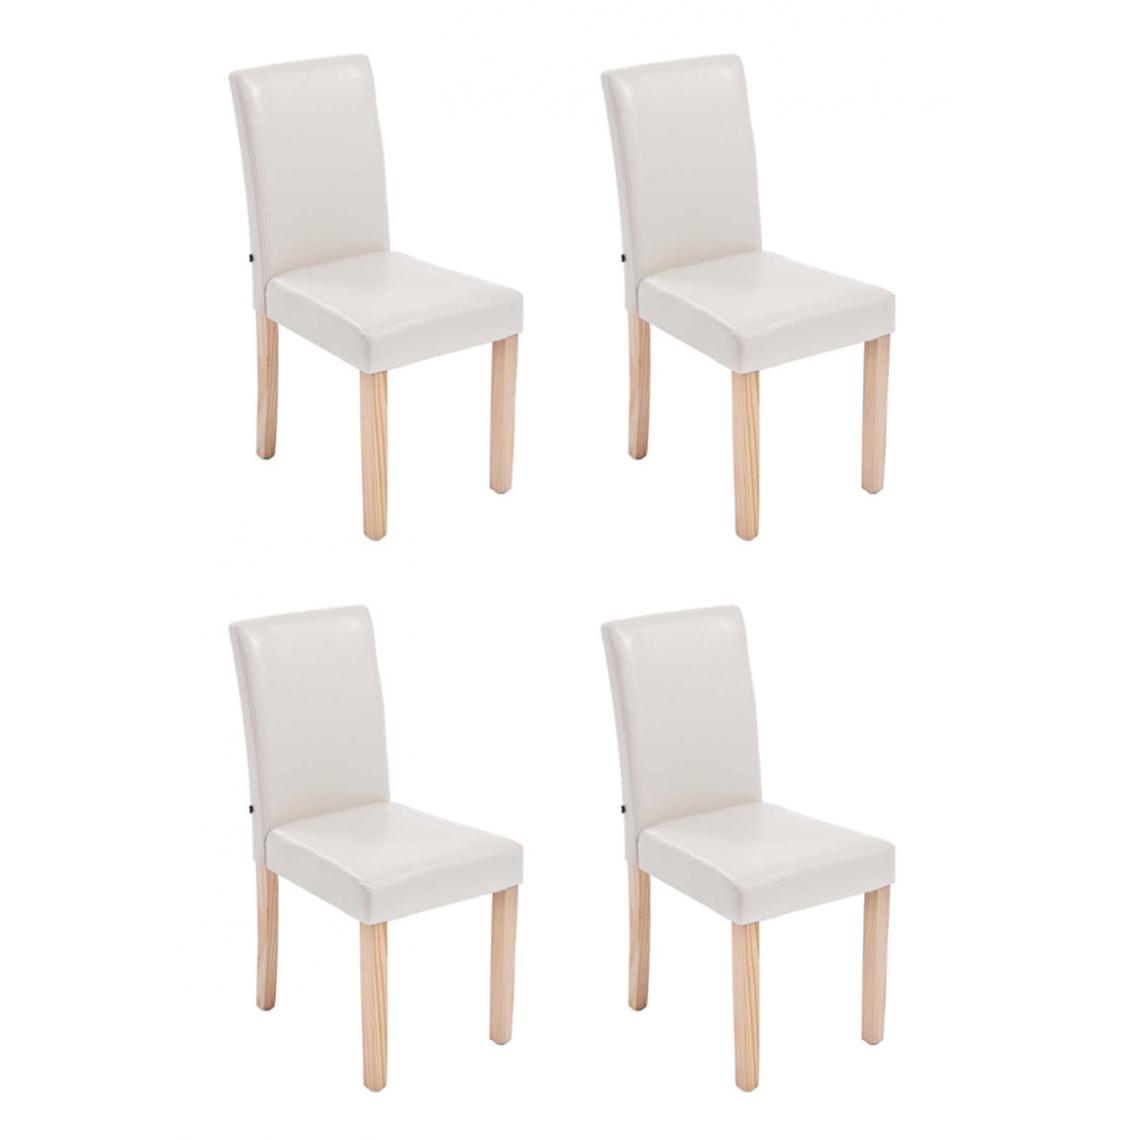 Icaverne - Admirable Lot de 4 chaises de salle à manger categorie Rabat natura couleur crème - Chaises